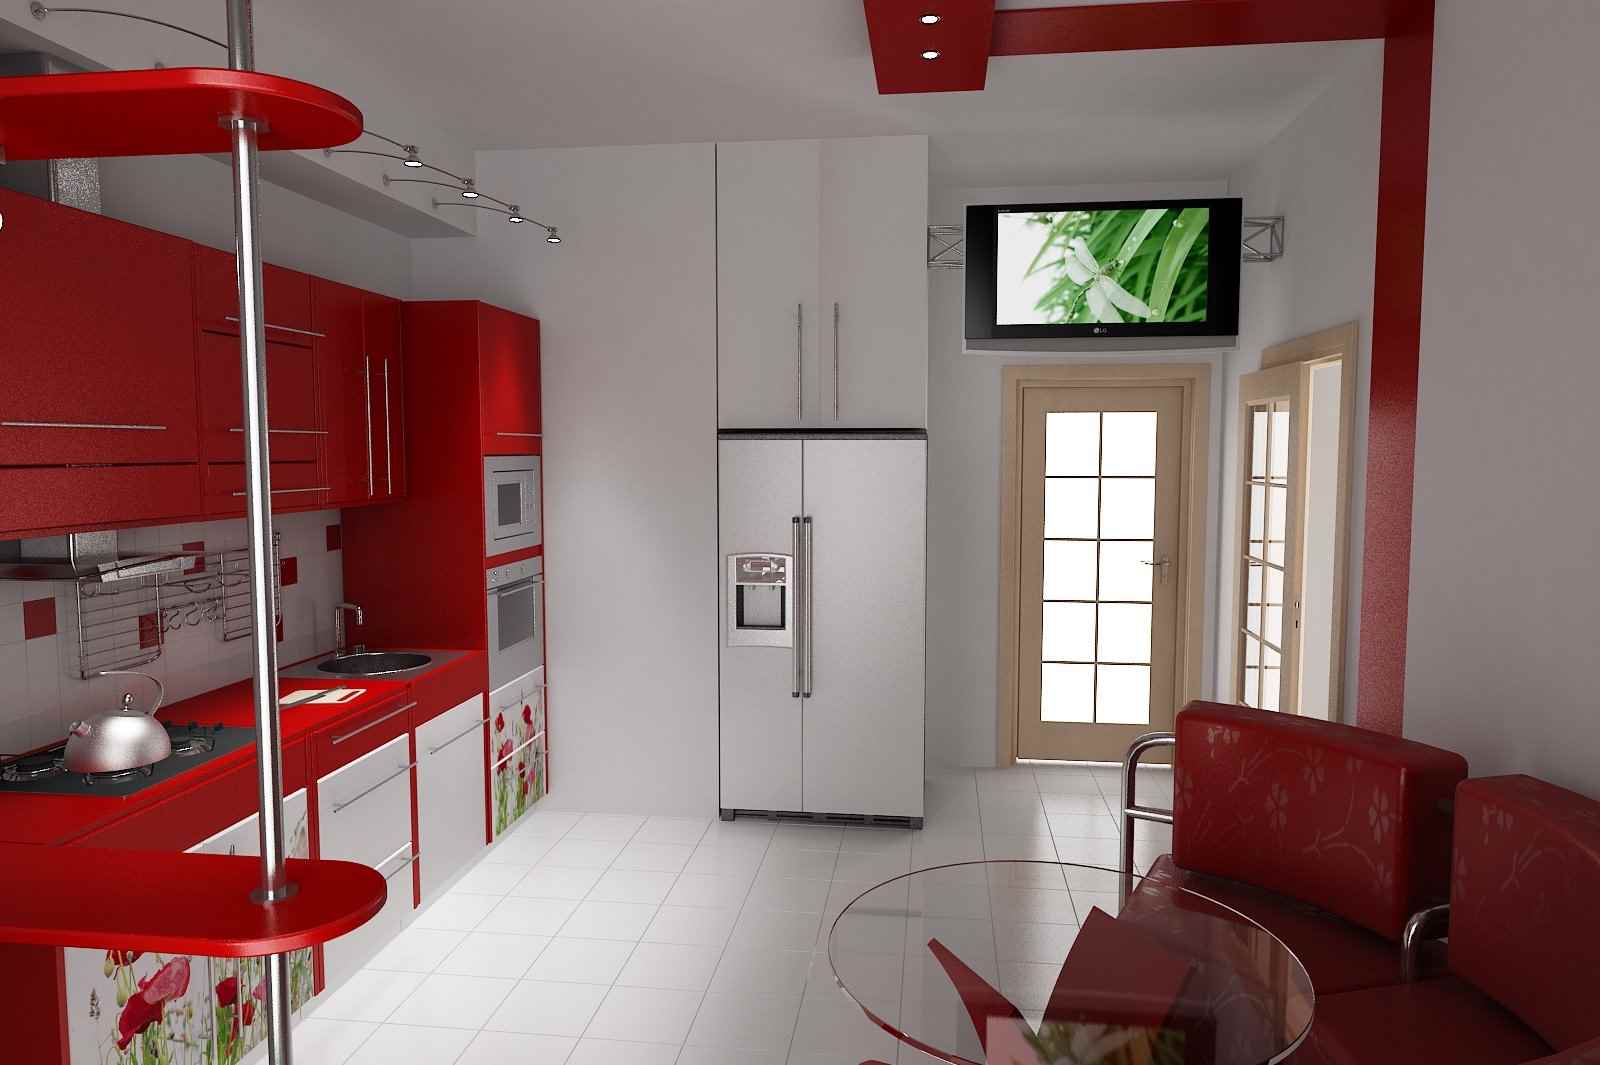 ideja neobičnog dizajna kuhinje je 11 m²